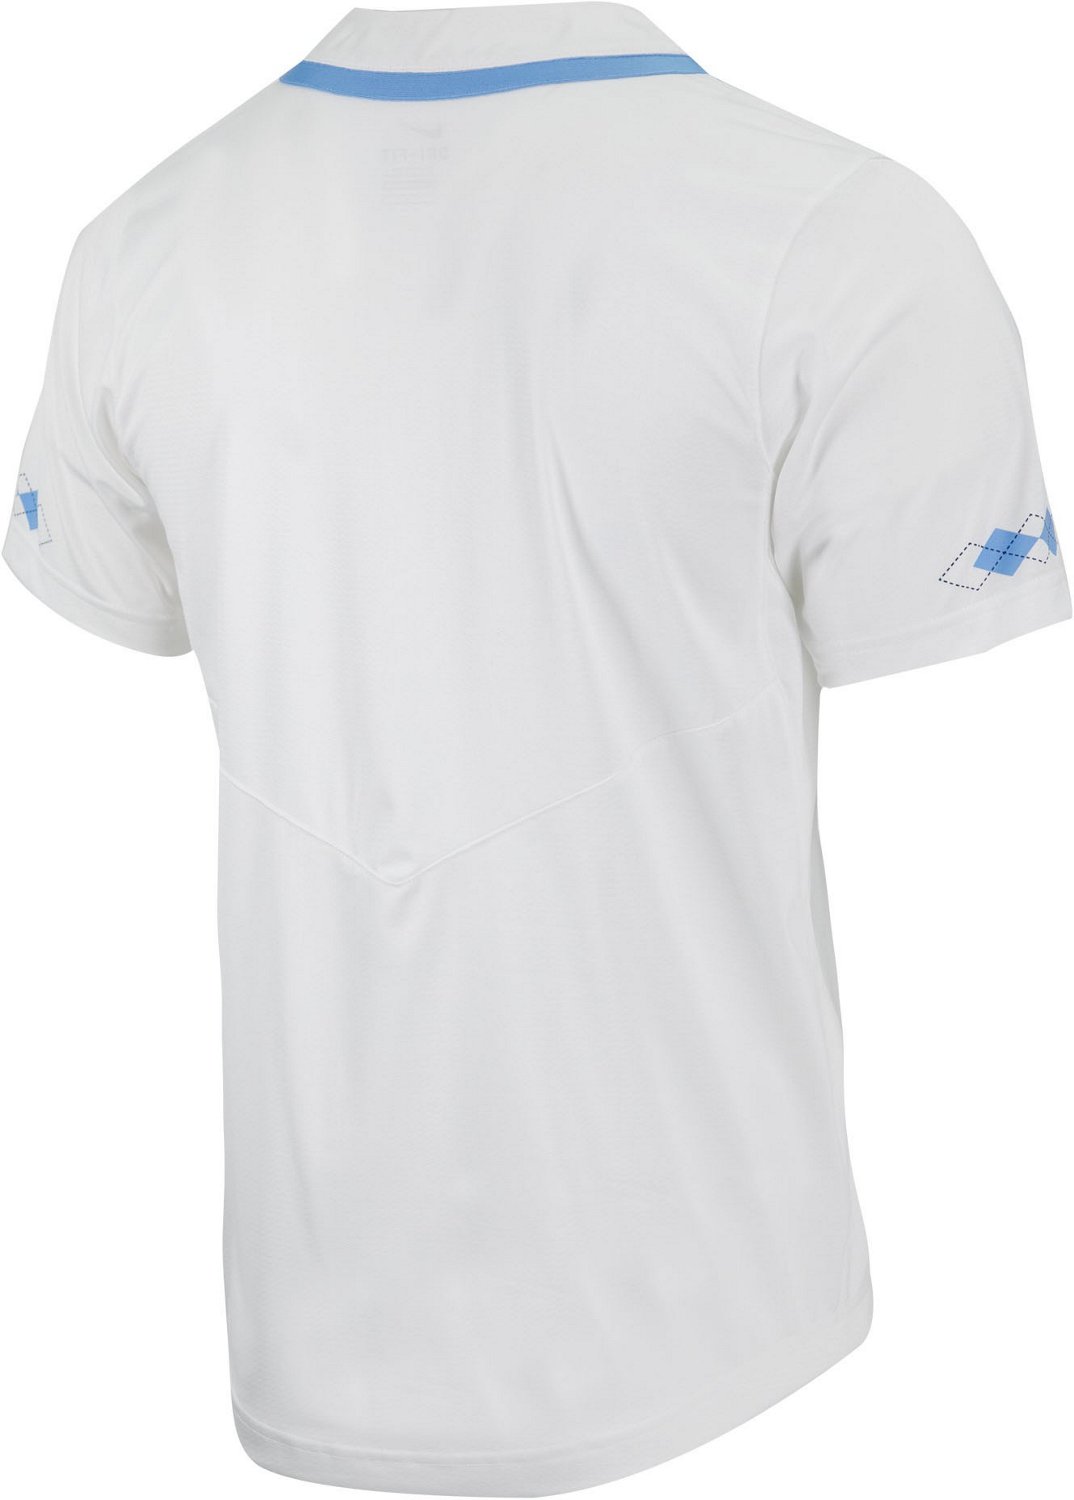 Nike, Shirts, University Of North Carolina Baseball Jersey